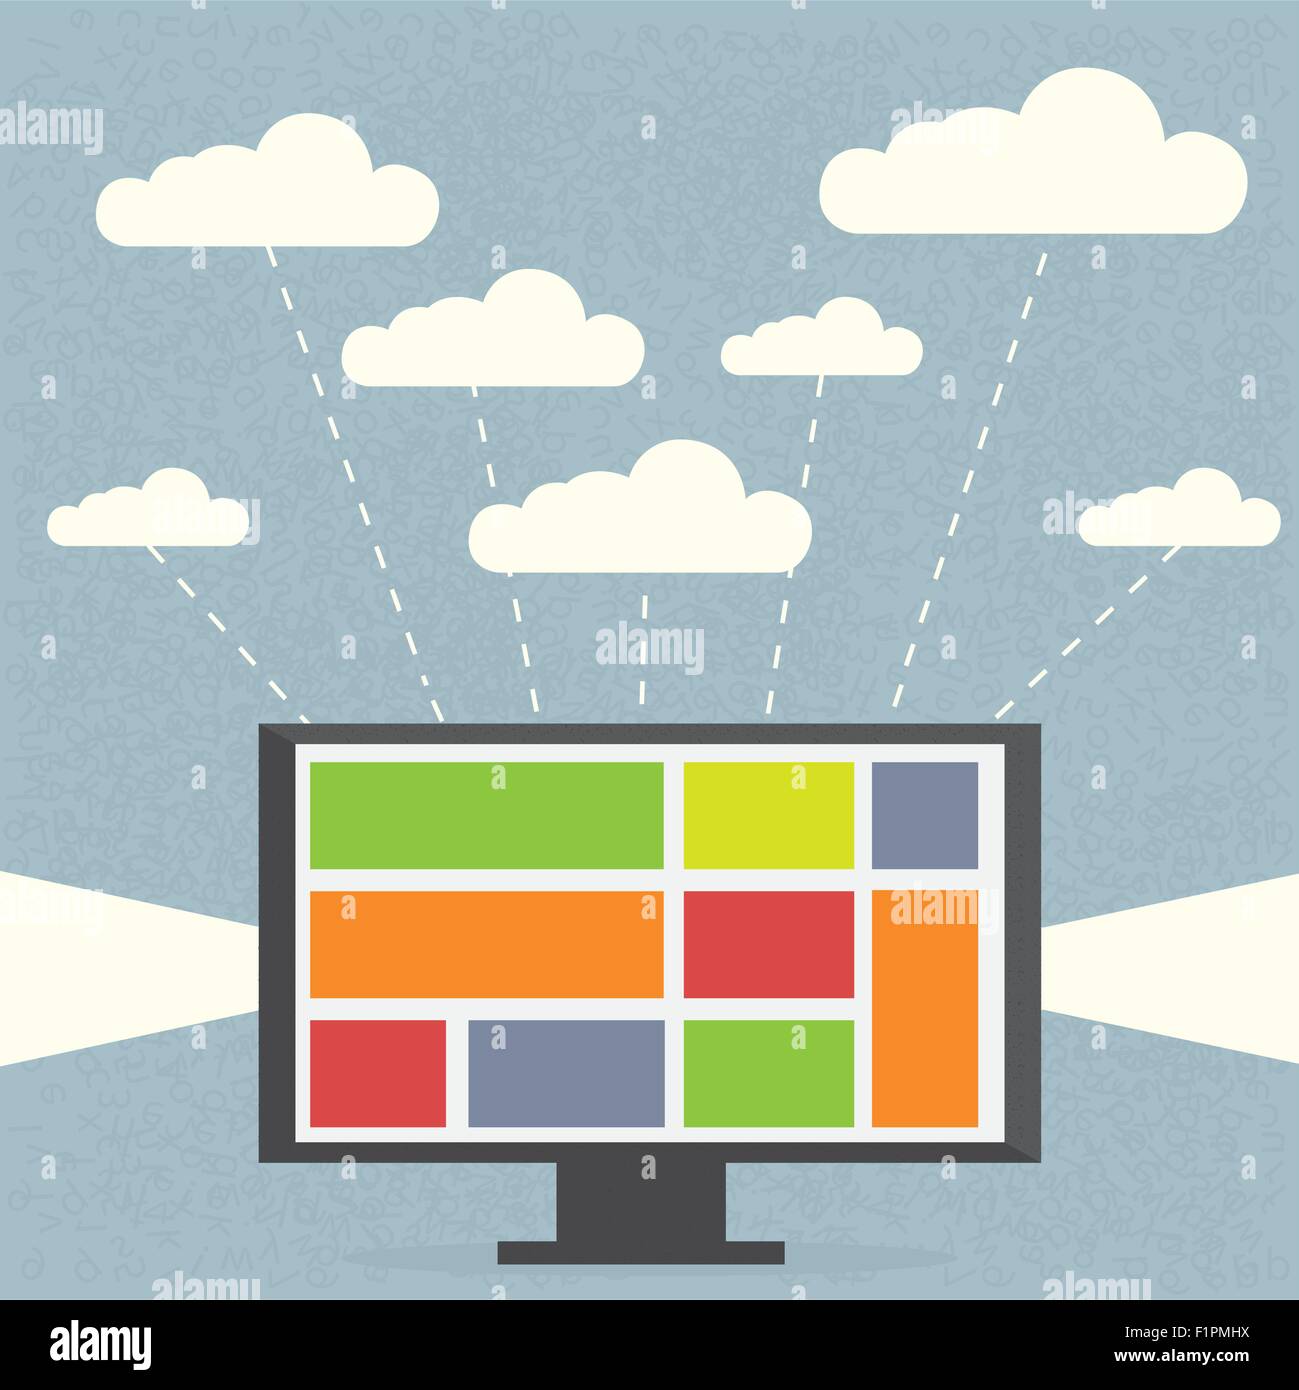 Moniteur avec nuages sur fond bleu Concept montrant qu'un utilisateur peut utiliser de nombreux services de cloud Illustration de Vecteur